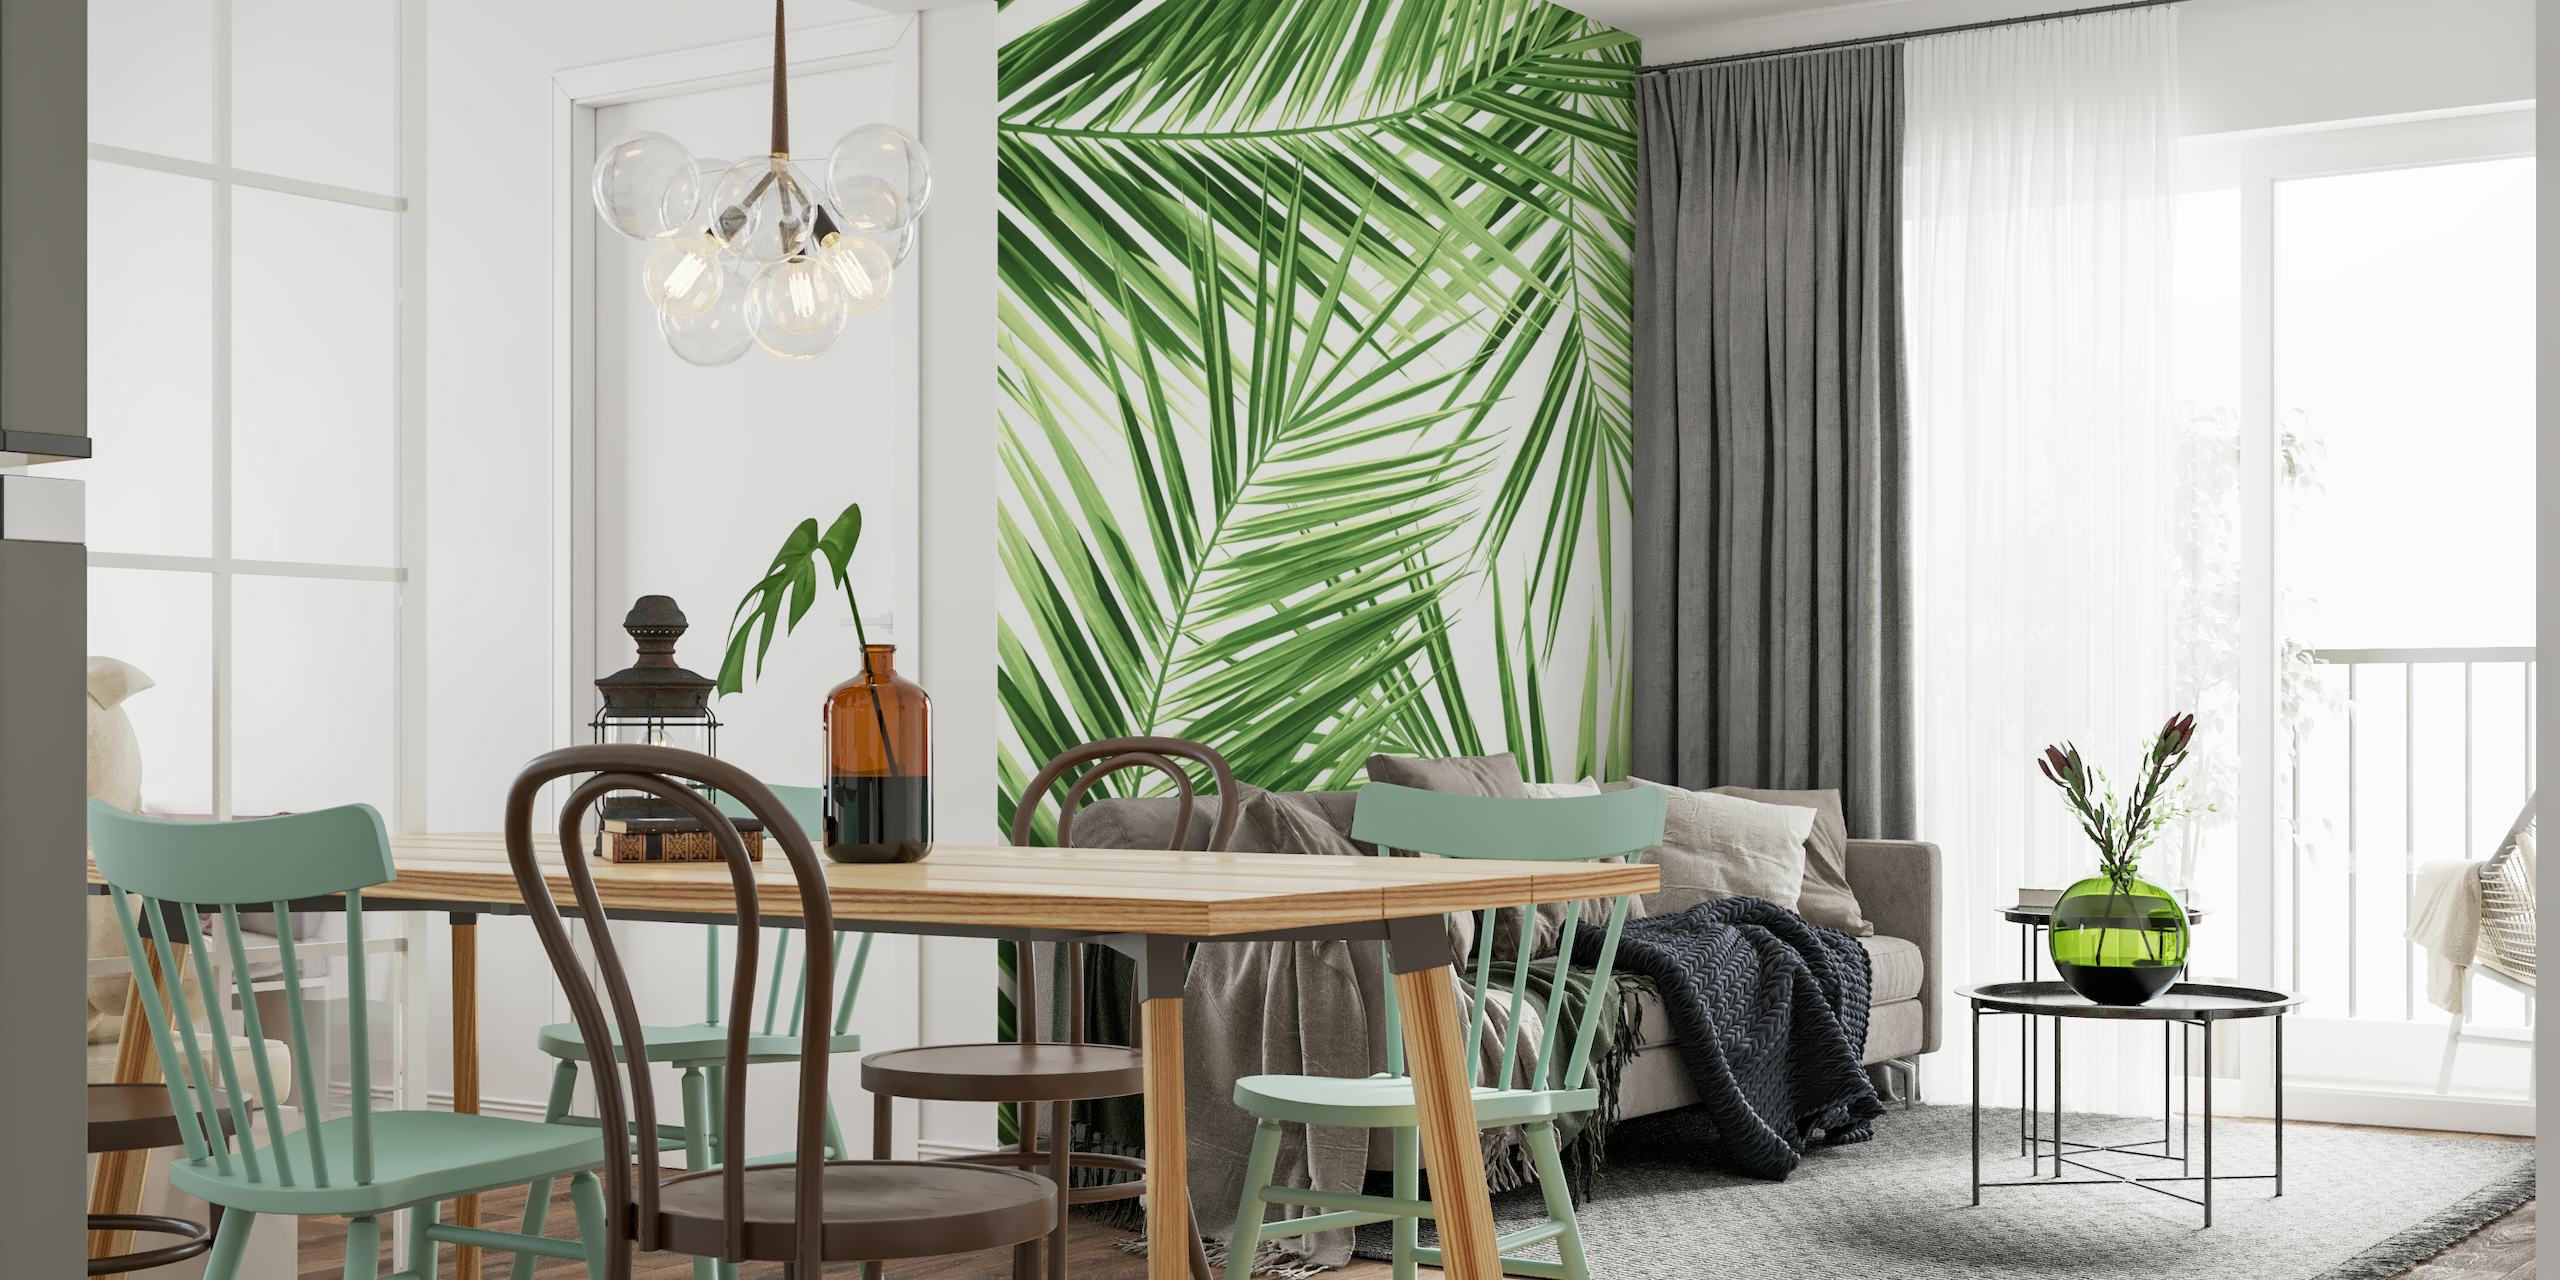 Muurschildering met groen palmbladpatroon voor een decor met een tropisch thema